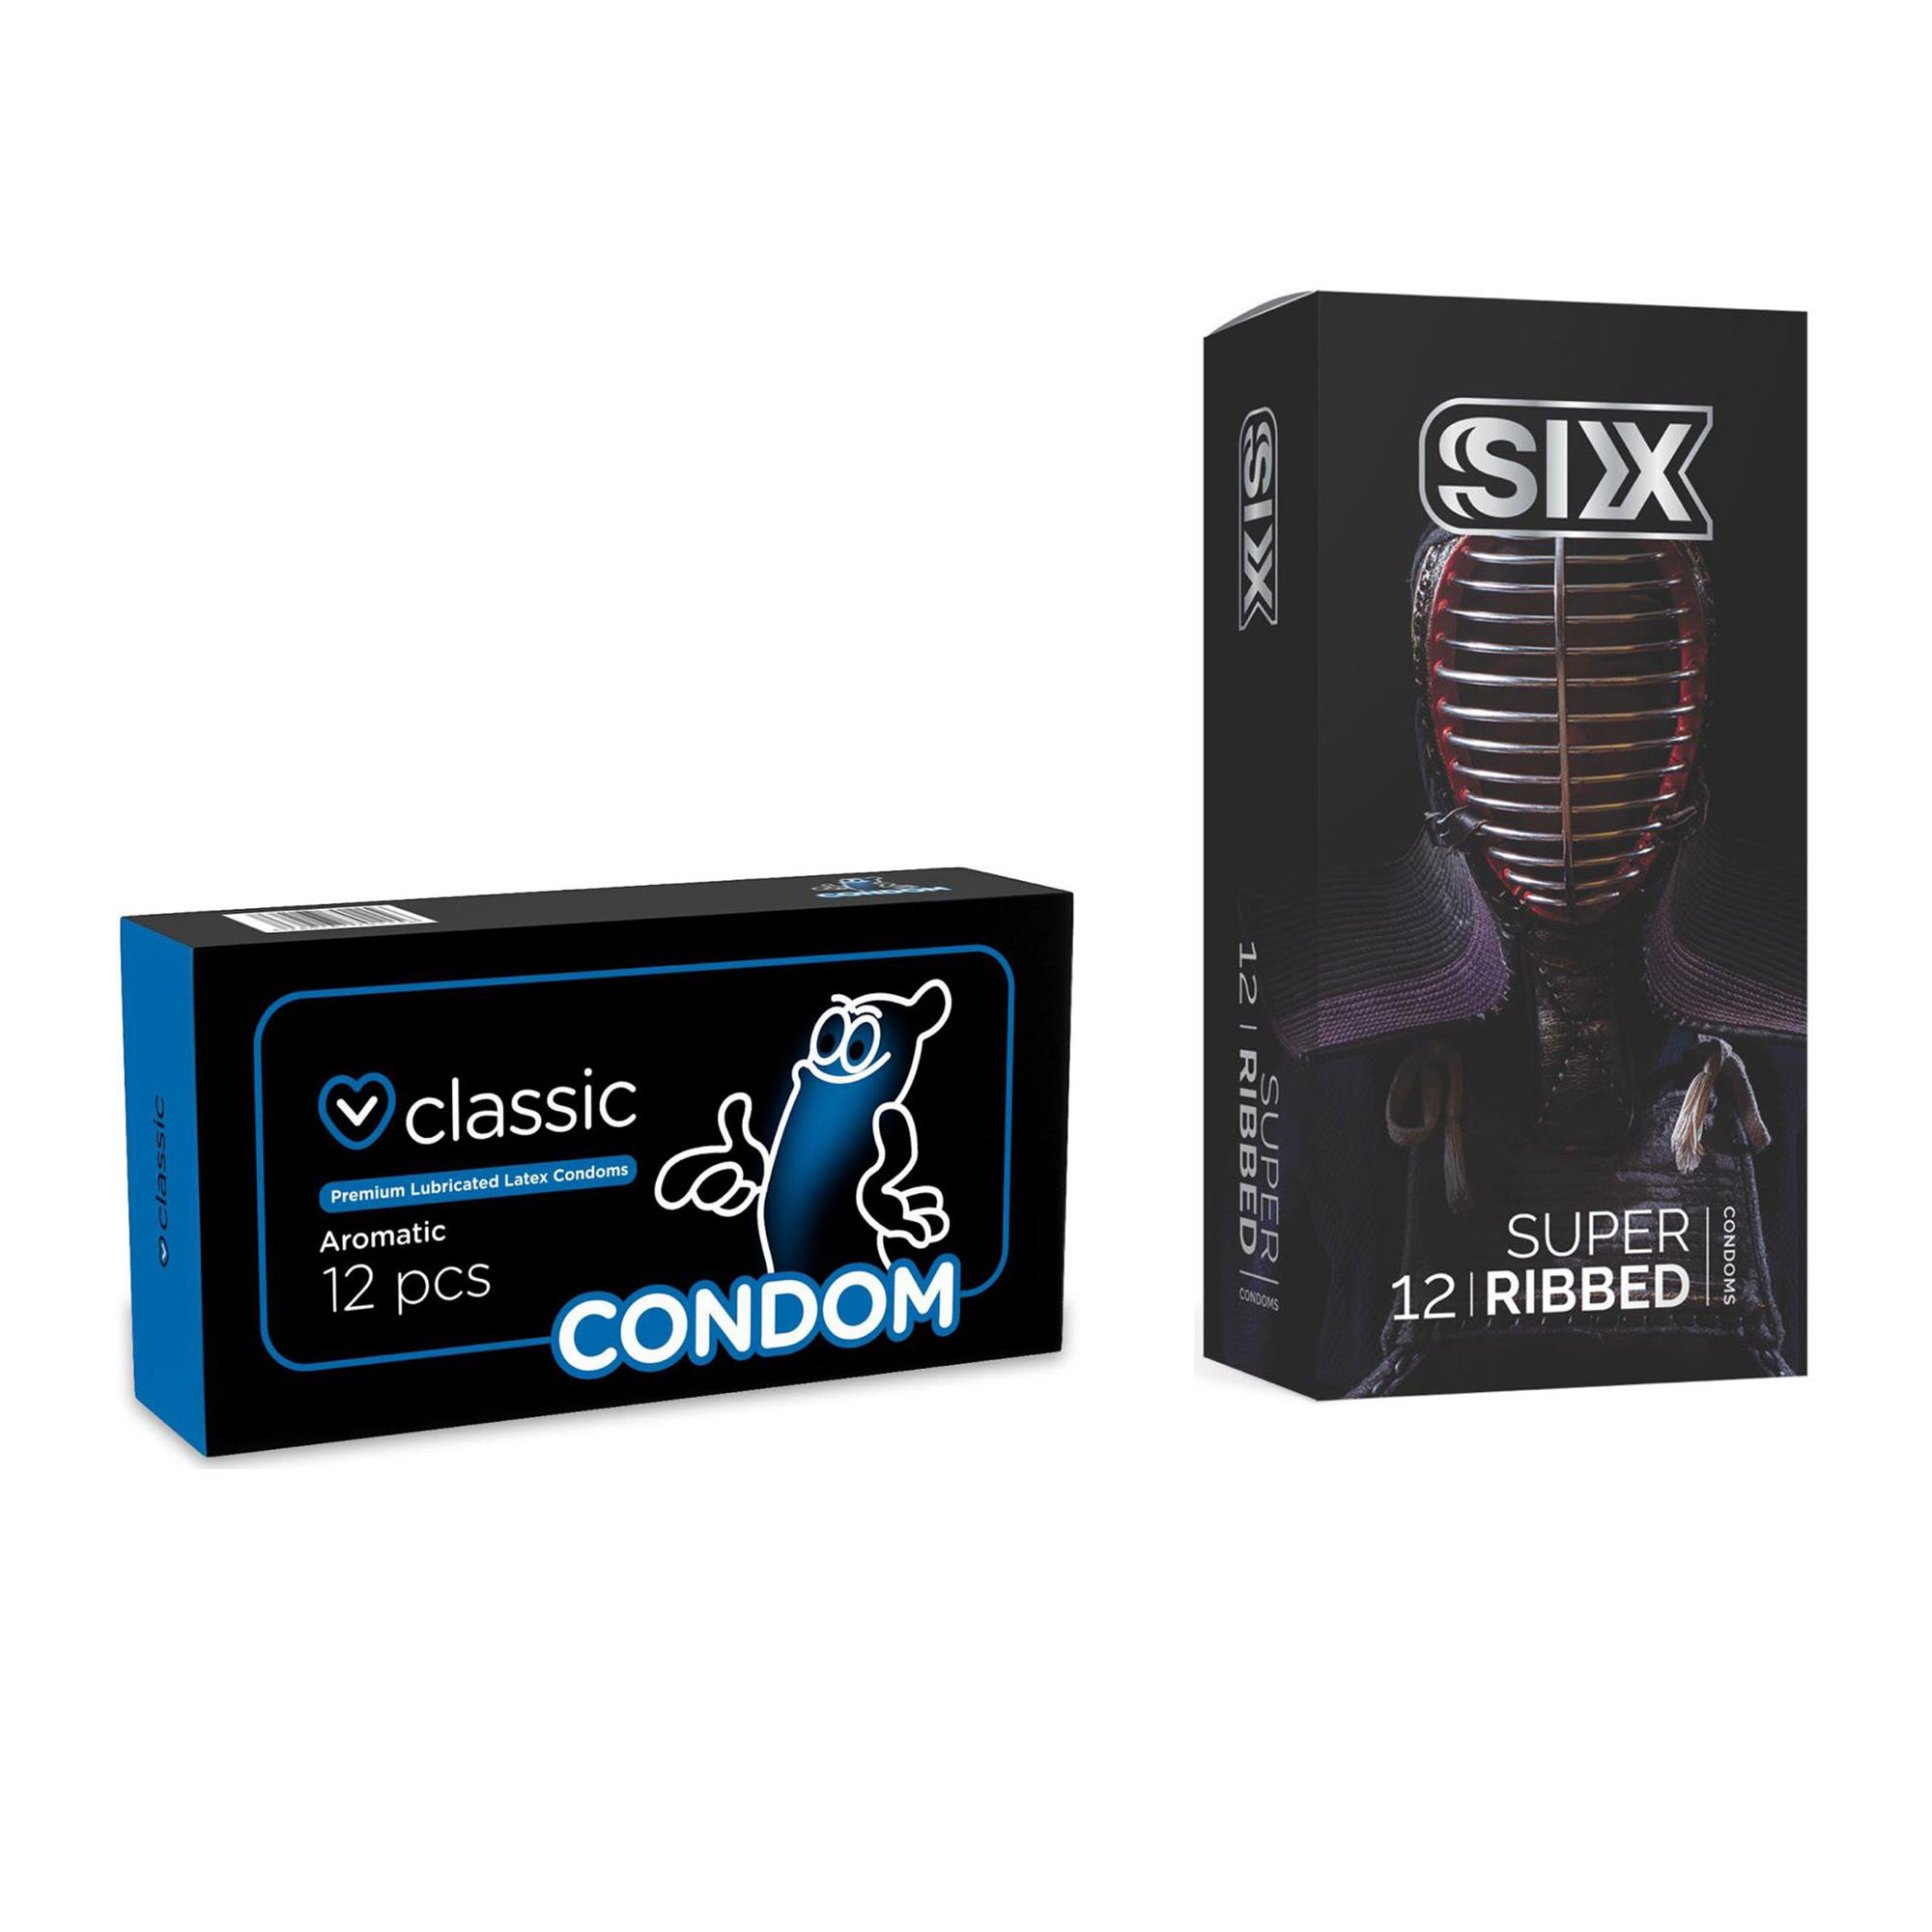 کاندوم سیکس مدل Super Ribbed بسته 12 عددی به همراه کاندوم کاندوم مدل Classic بسته 12 عددی